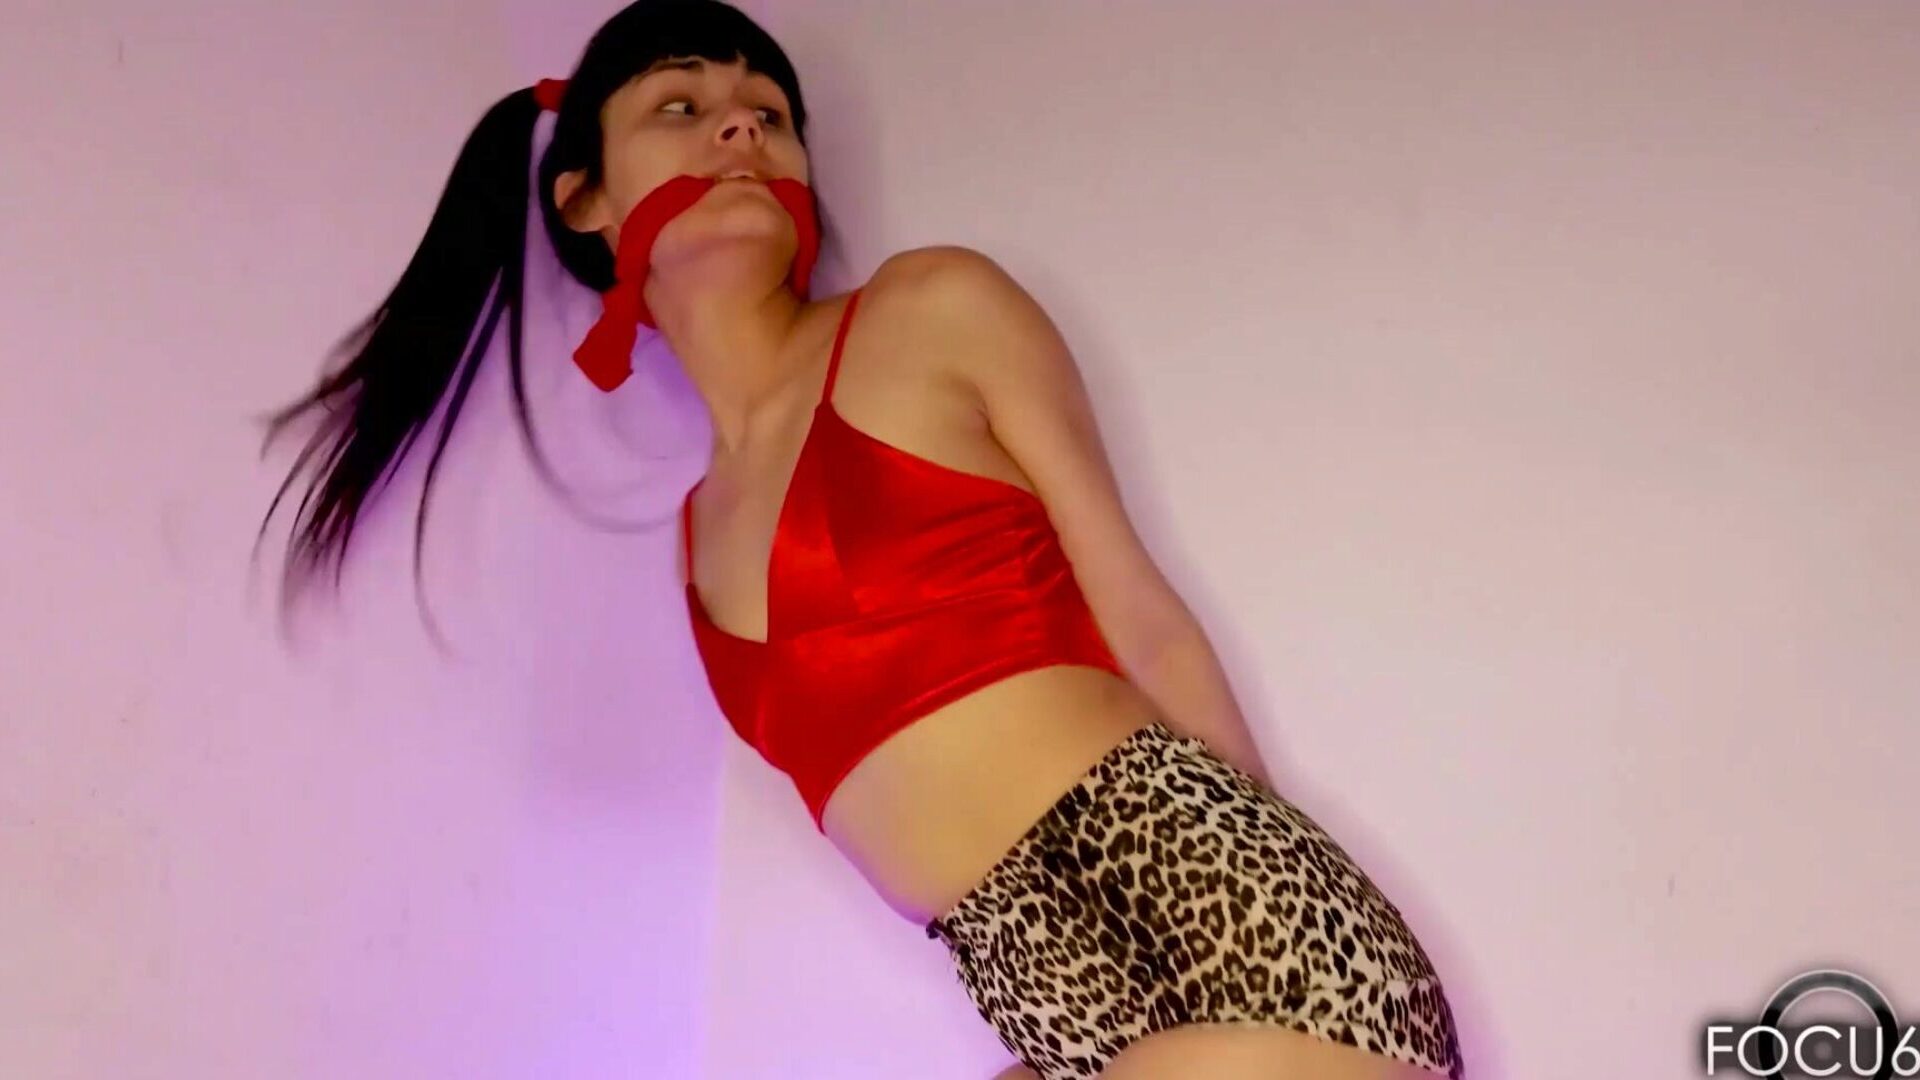 desi hubená zákonný věk teenager nenita argentina barbie rivas | capÍtulo 1 - kompletní videa pouze pro fanoušky